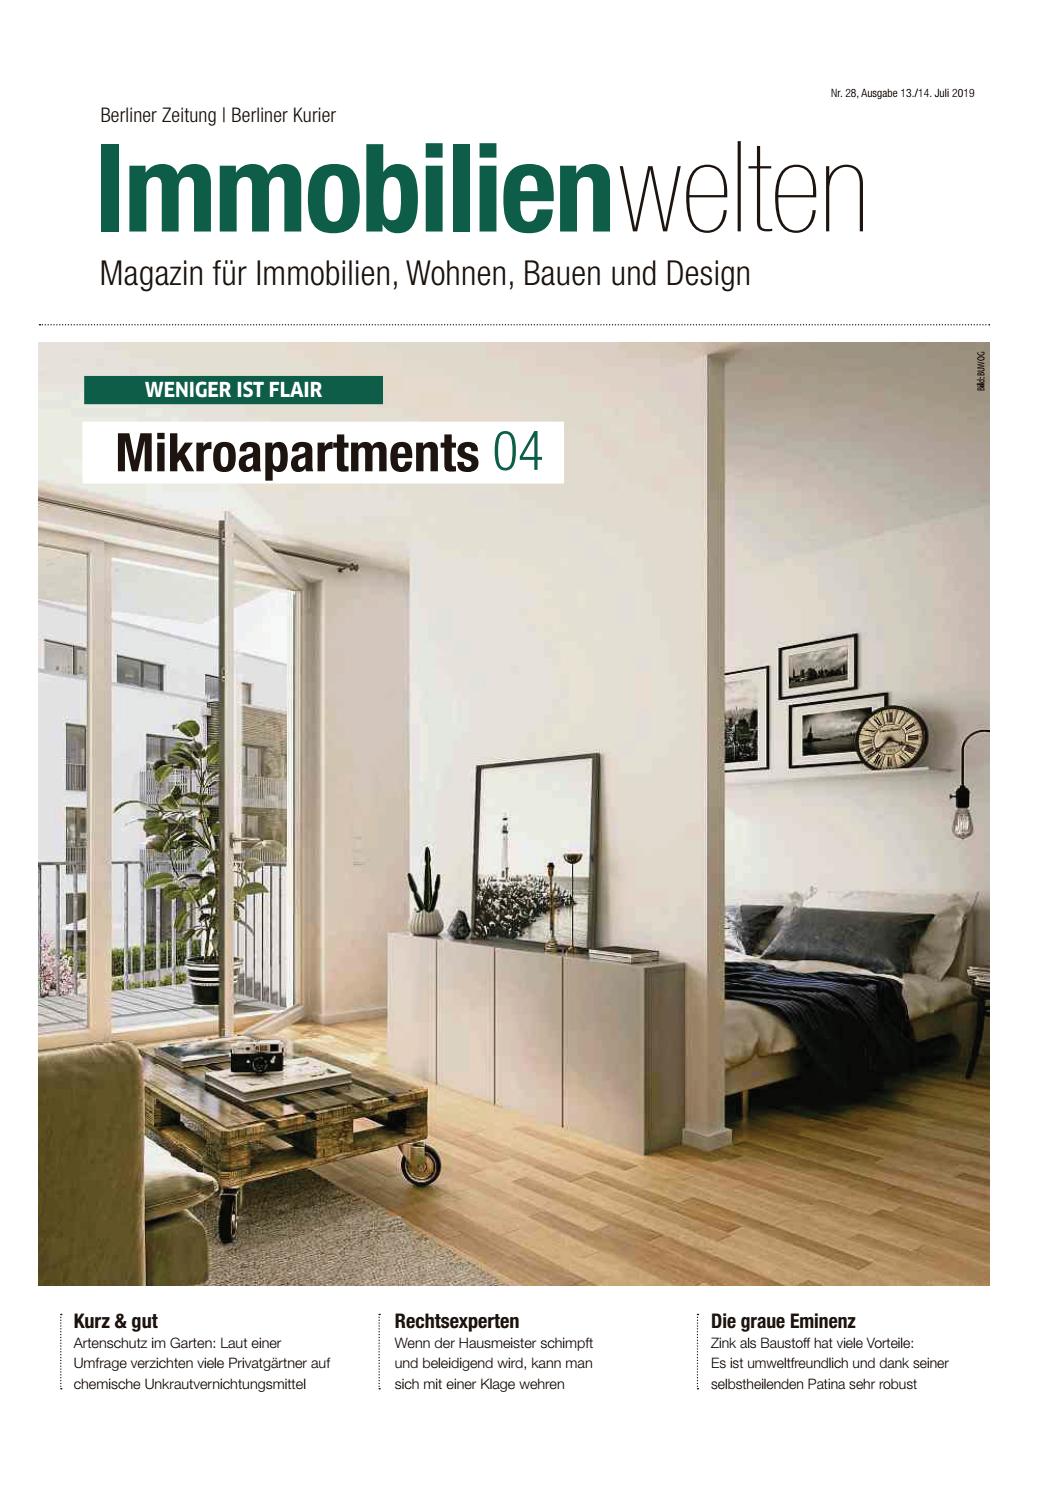 Garten Magazin Einzigartig Immobilienwelten Mikroapartments by Berlin Me N Gmbh issuu